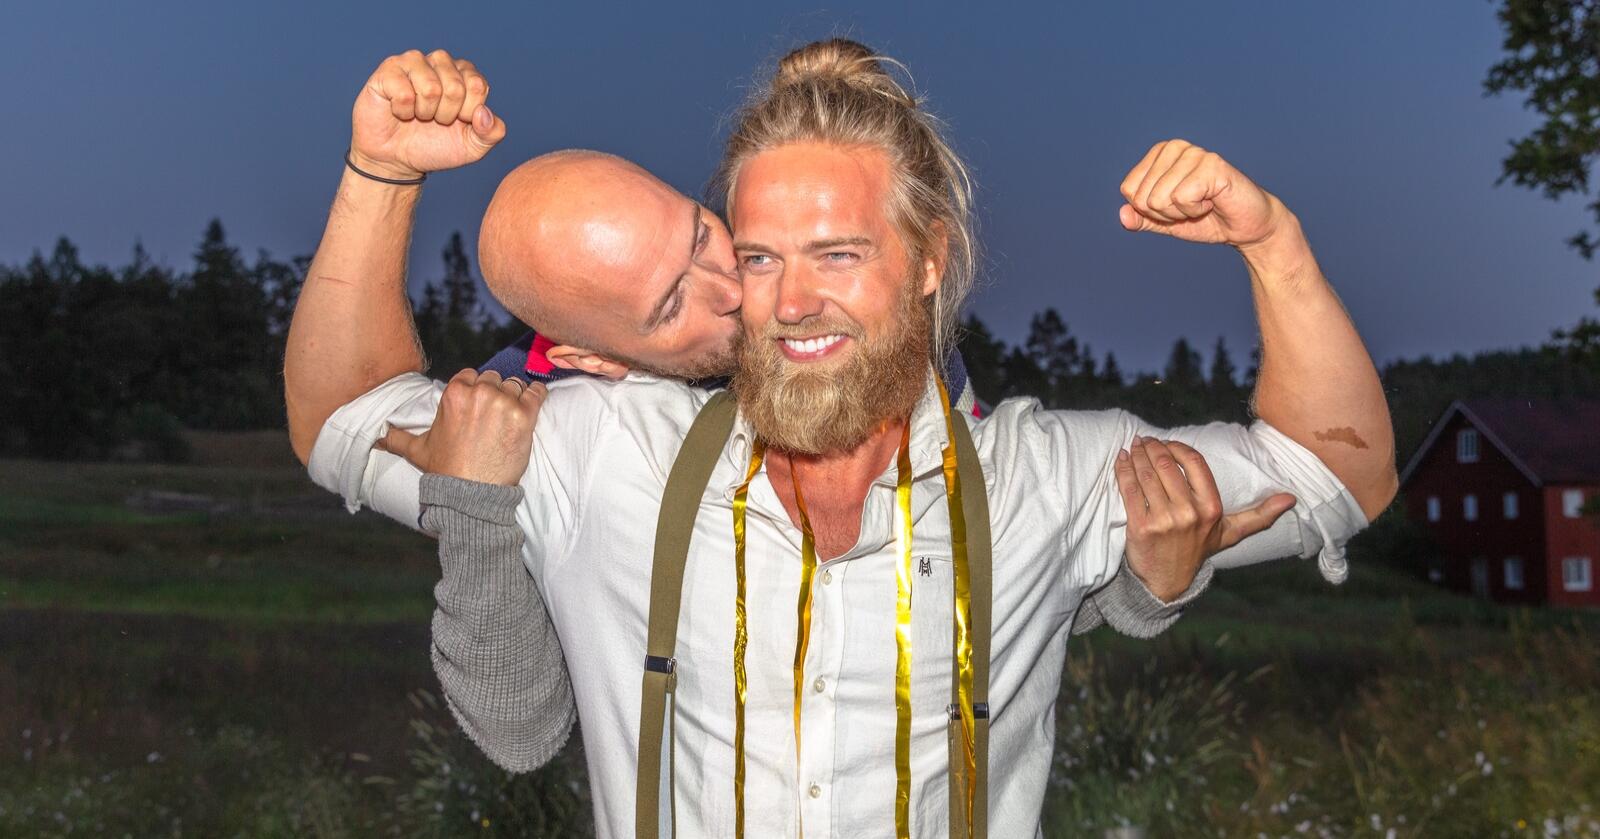 Instagram-stjerne Lasse Matberg fikk et kyss på skinnet av komiker Terje Sporsem etter å slått ham i «Farmen Kjendis»-finalen. Foto: Alex Iversen/TV 2